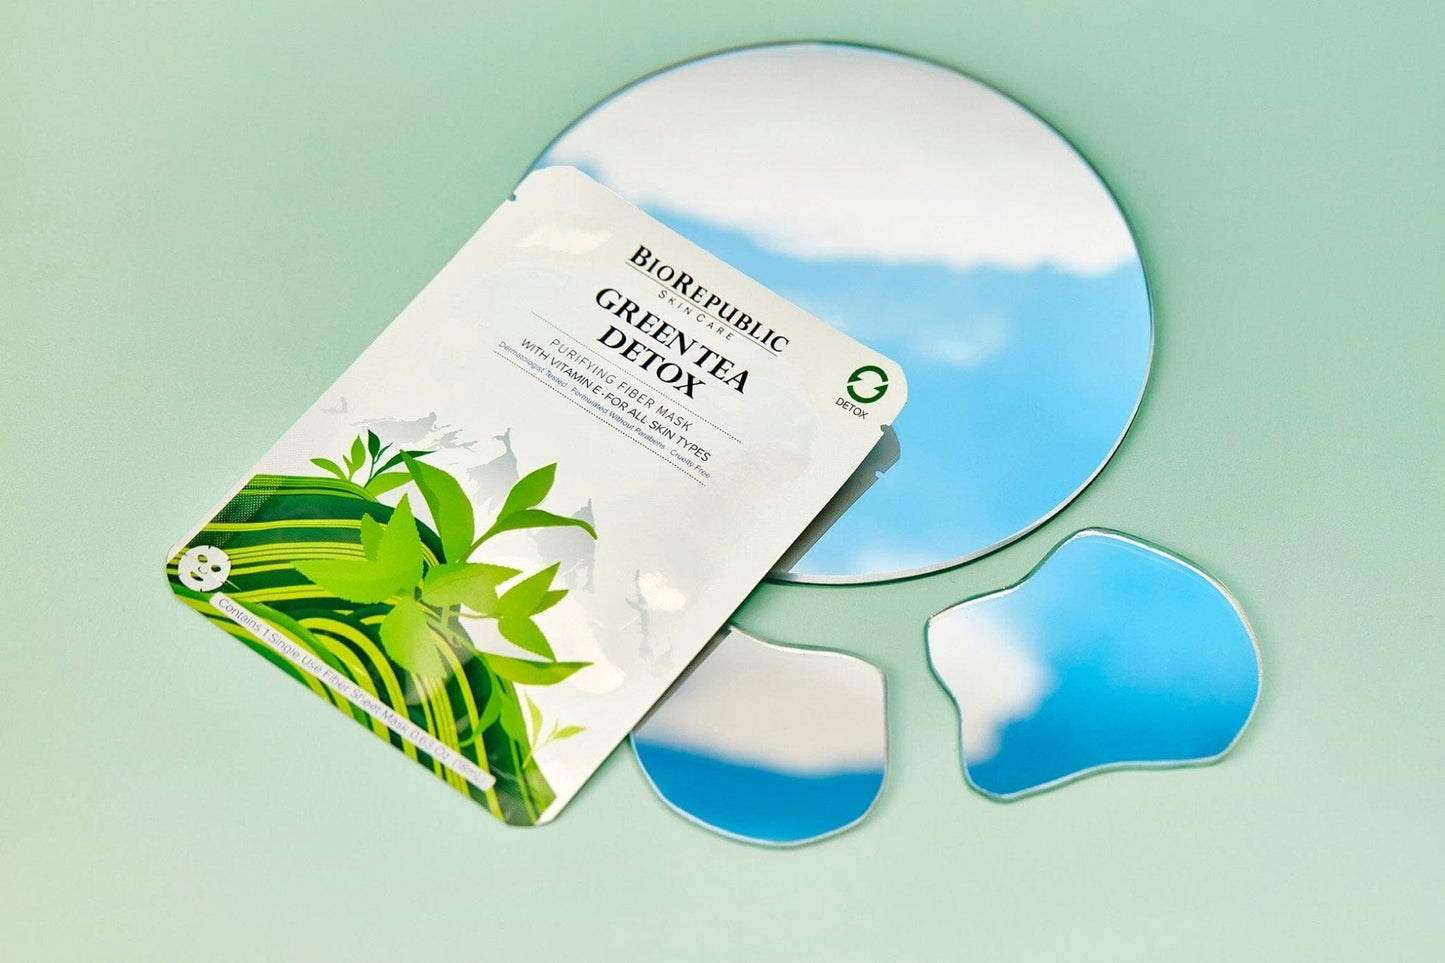 Green Tea Detox Purifying Sheet Mask Sheet Mask BioRepublic 